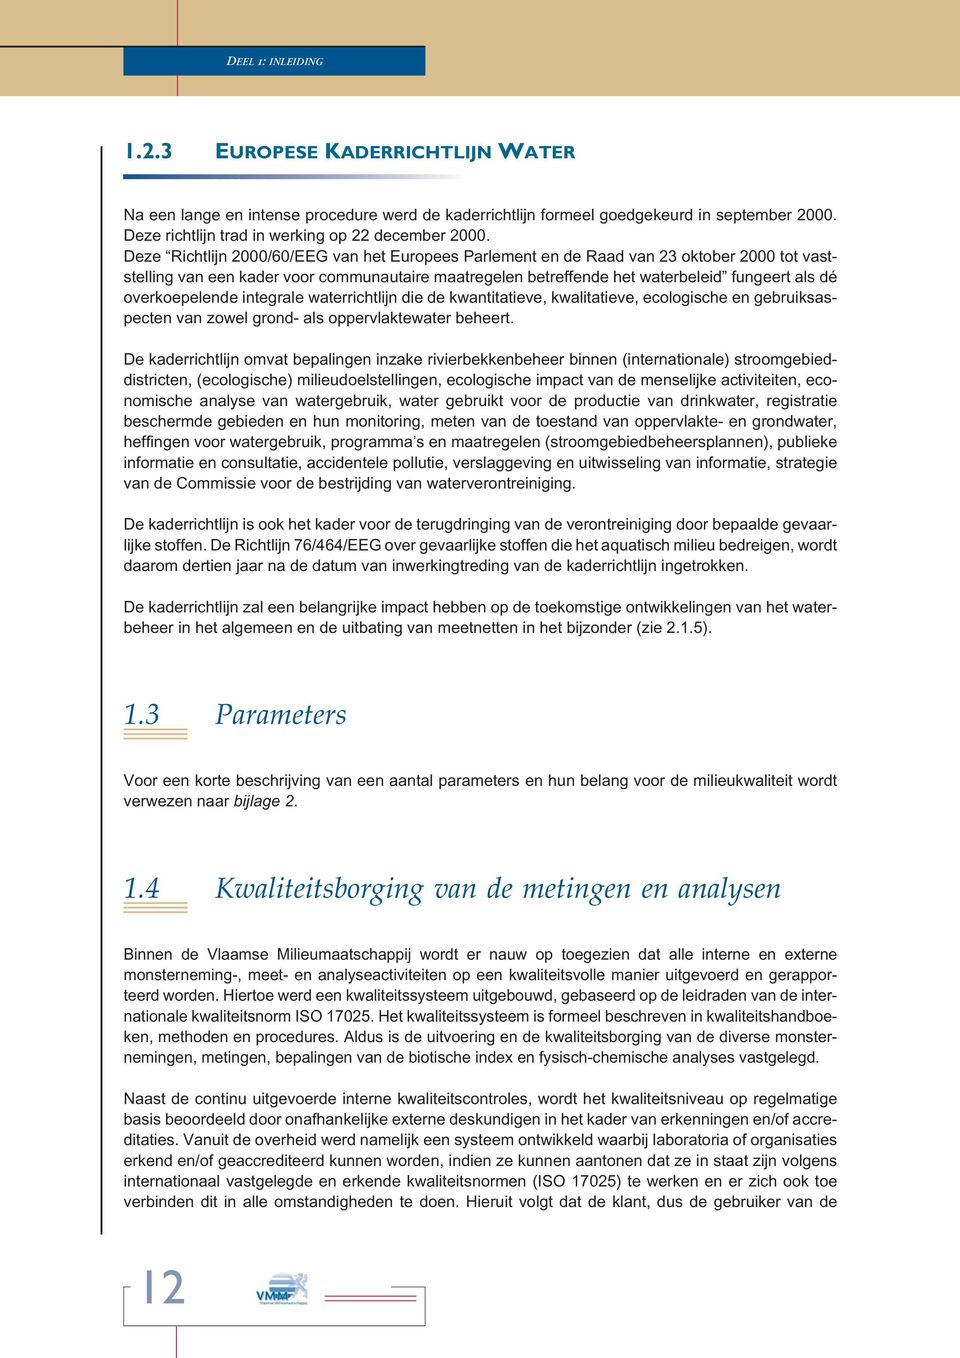 Deze Richtlijn 2000/60/EEG van het Europees Parlement en de Raad van 23 oktober 2000 tot vaststelling van een kader voor communautaire maatregelen betreffende het waterbeleid fungeert als dé